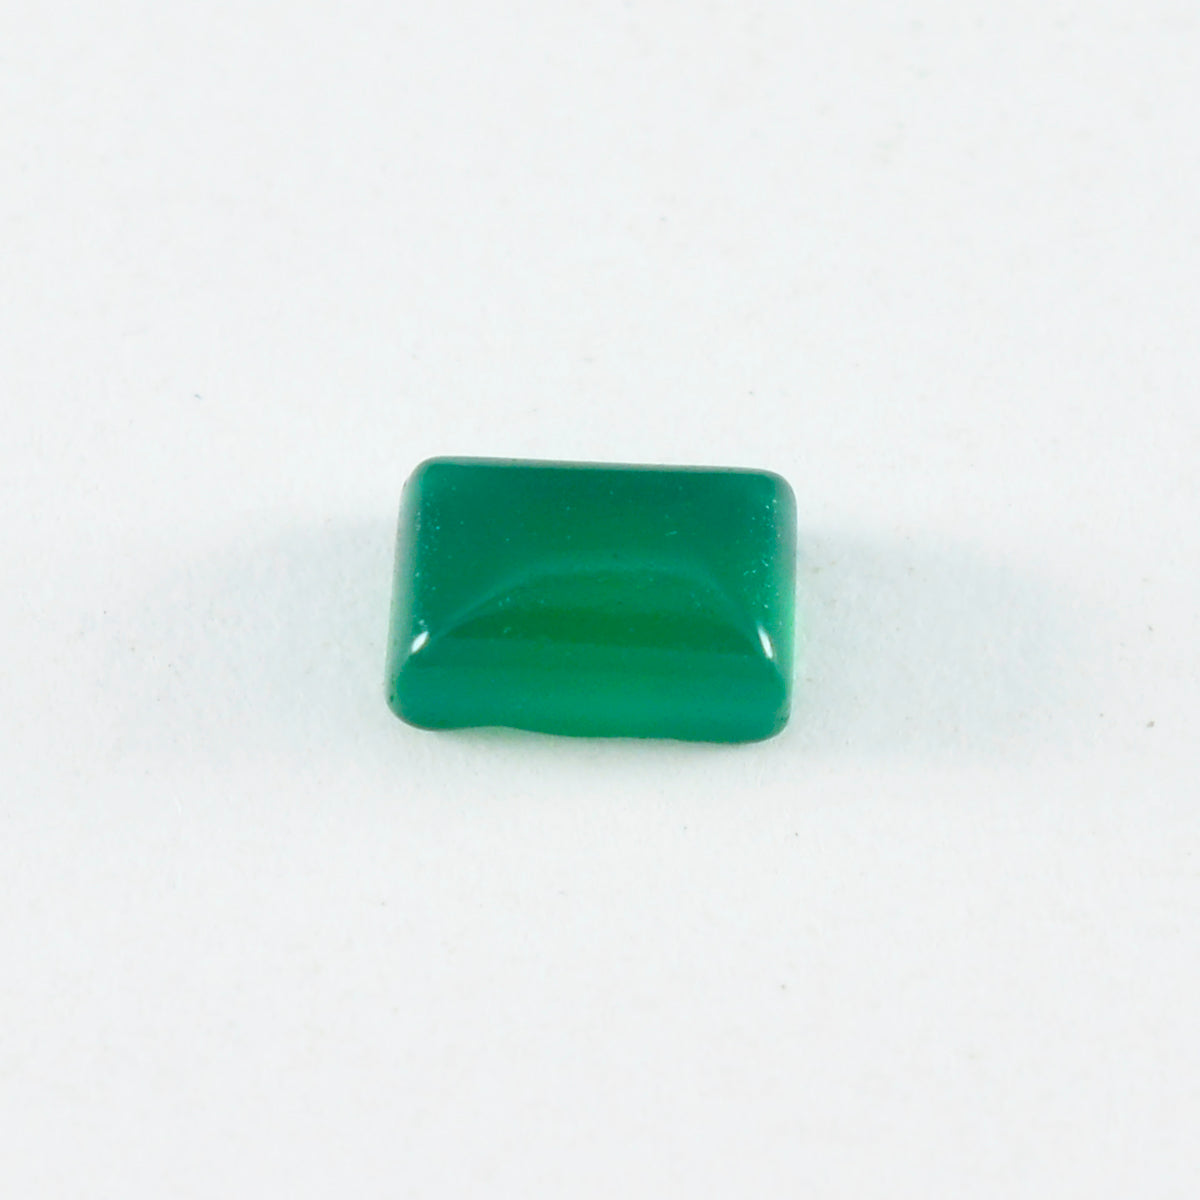 Riyogems 1PC Green Onyx Cabochon 8x10 mm Octagon Shape pretty Quality Loose Gemstone